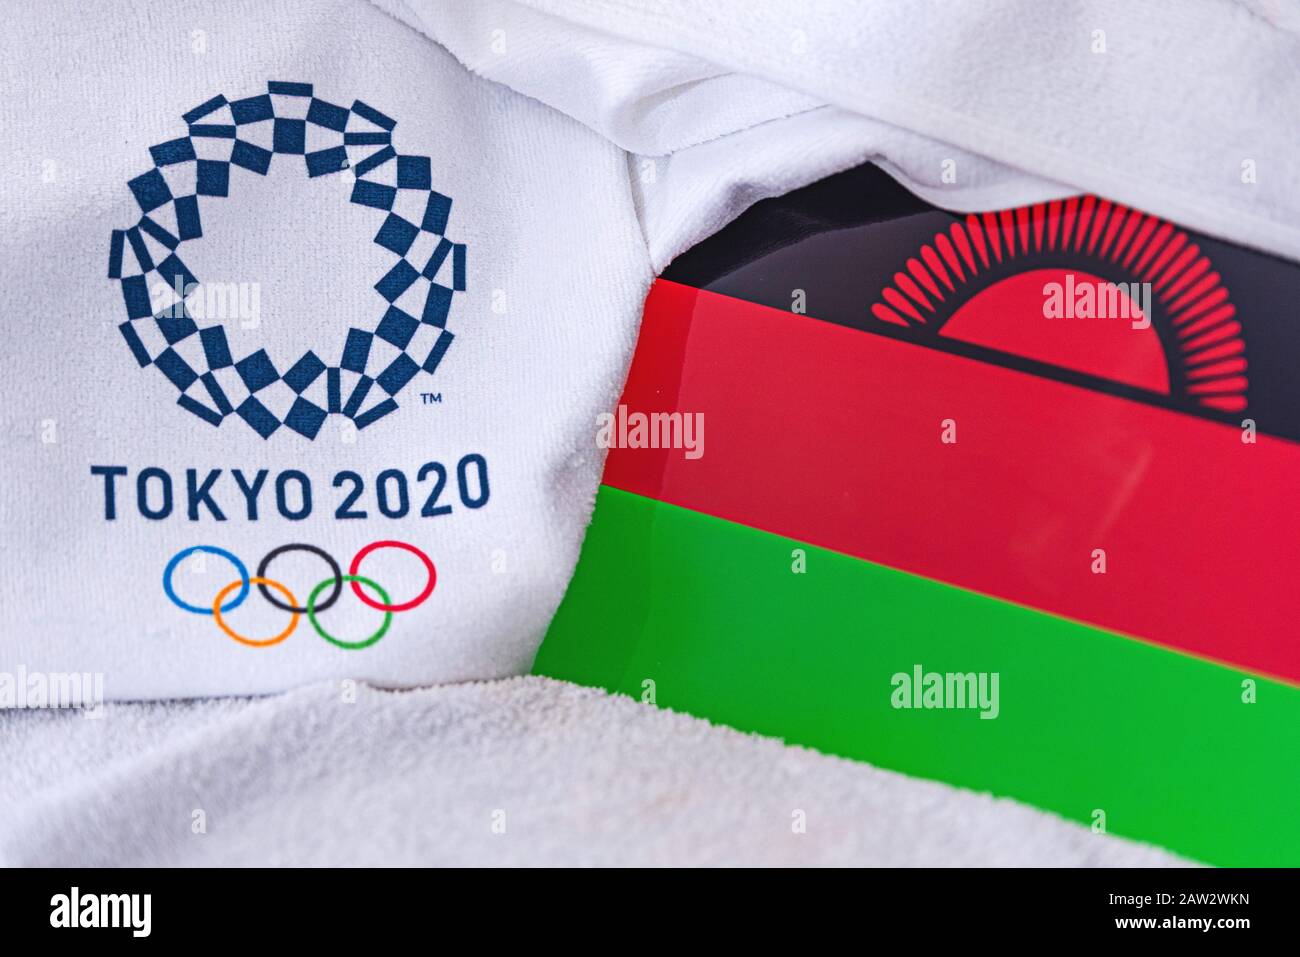 TOKIO, JAPAN, FEBRUAR. 4, 2020: Malawi National Flag, offizielles Logo der Olympischen Sommerspiele in Tokio 2020. Weißer Hintergrund Stockfoto